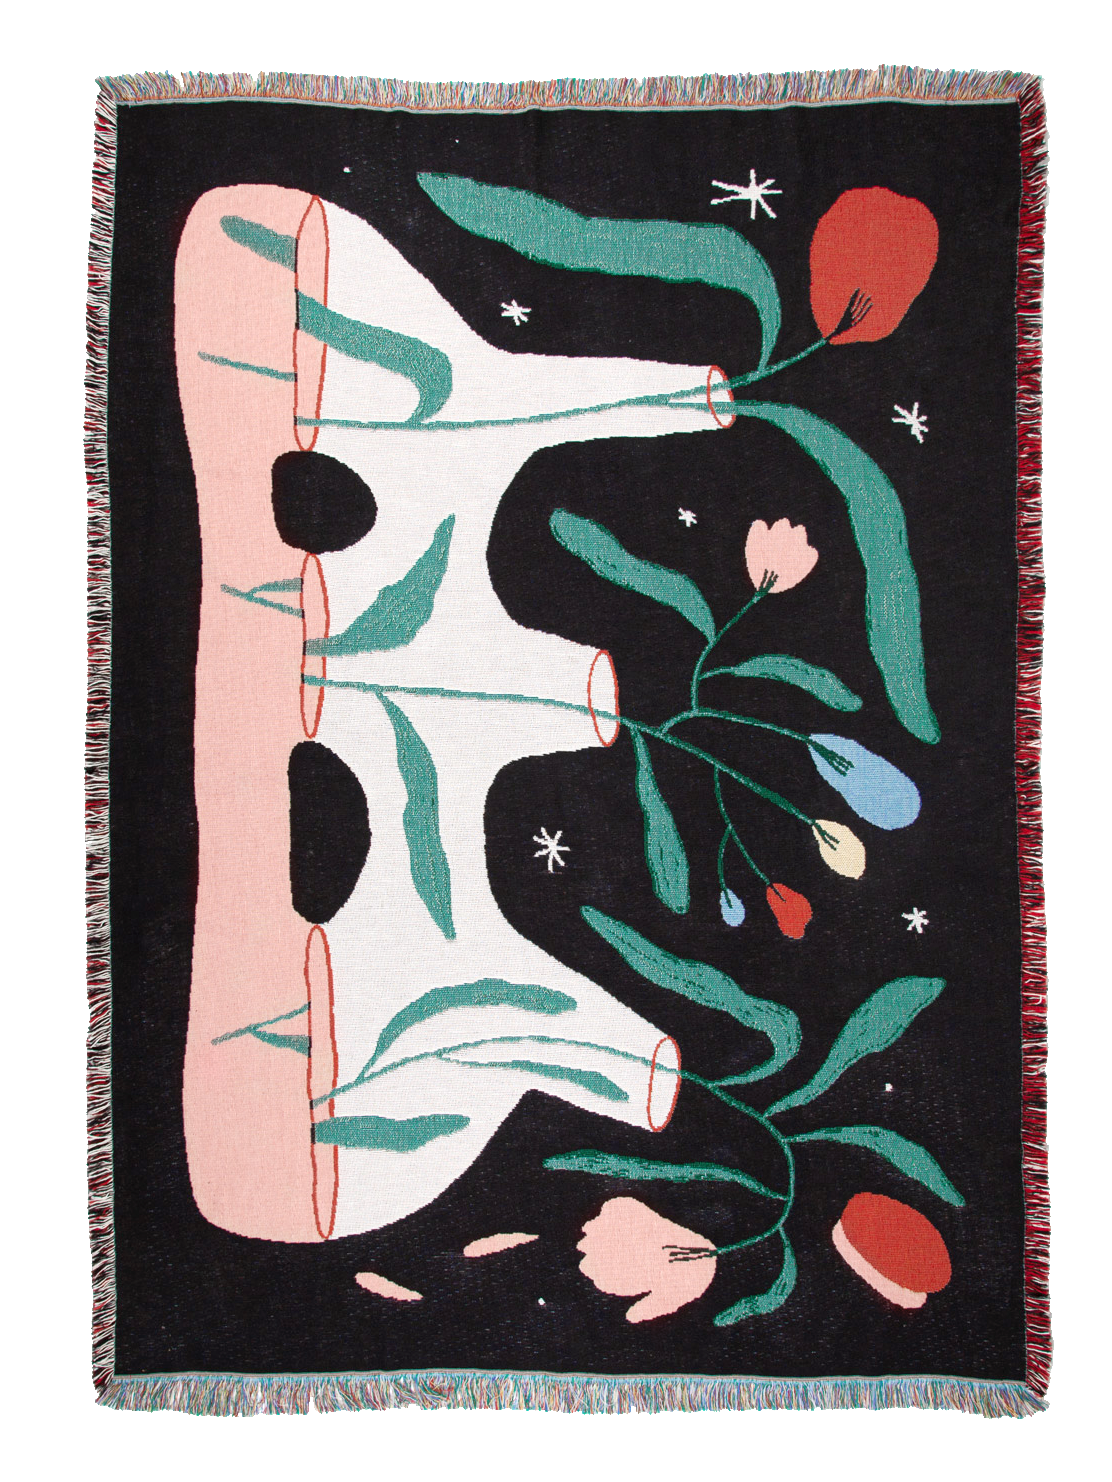 Arvo Knit Blanket by Jesse Brown for Slowdown Studio – My o My